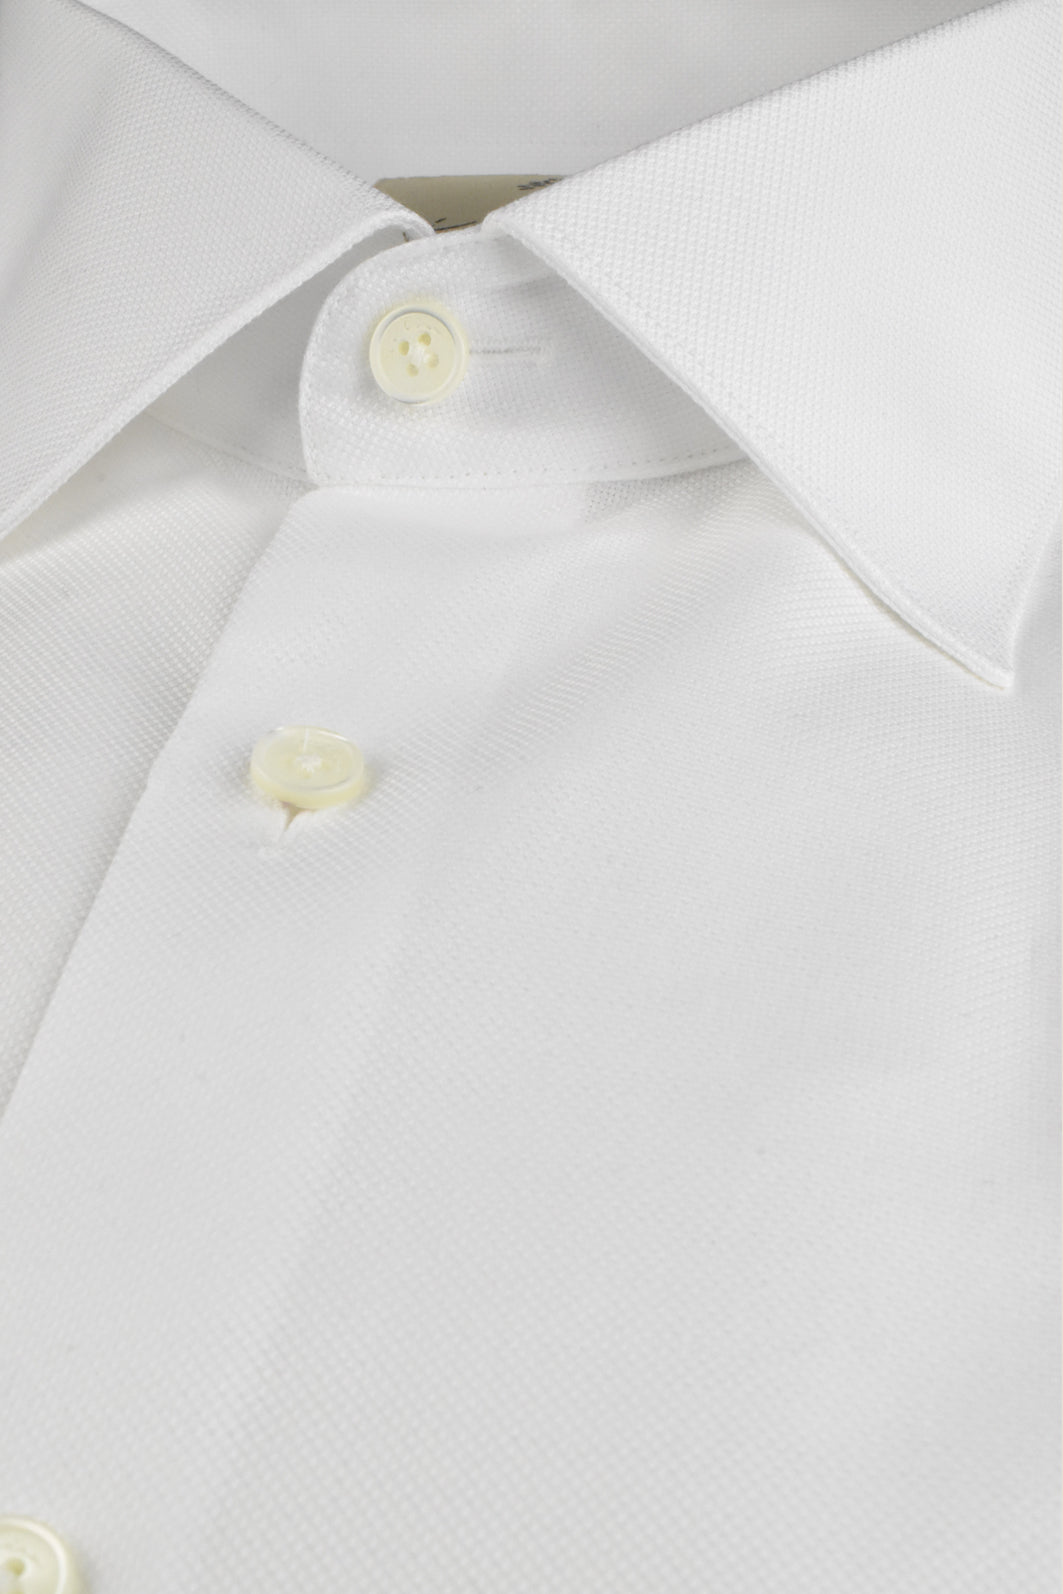 Weisses, leicht strukturiertes Business - Hemd aus Bio - Baumwolle mit klassischem Haifischkragen - Made to order